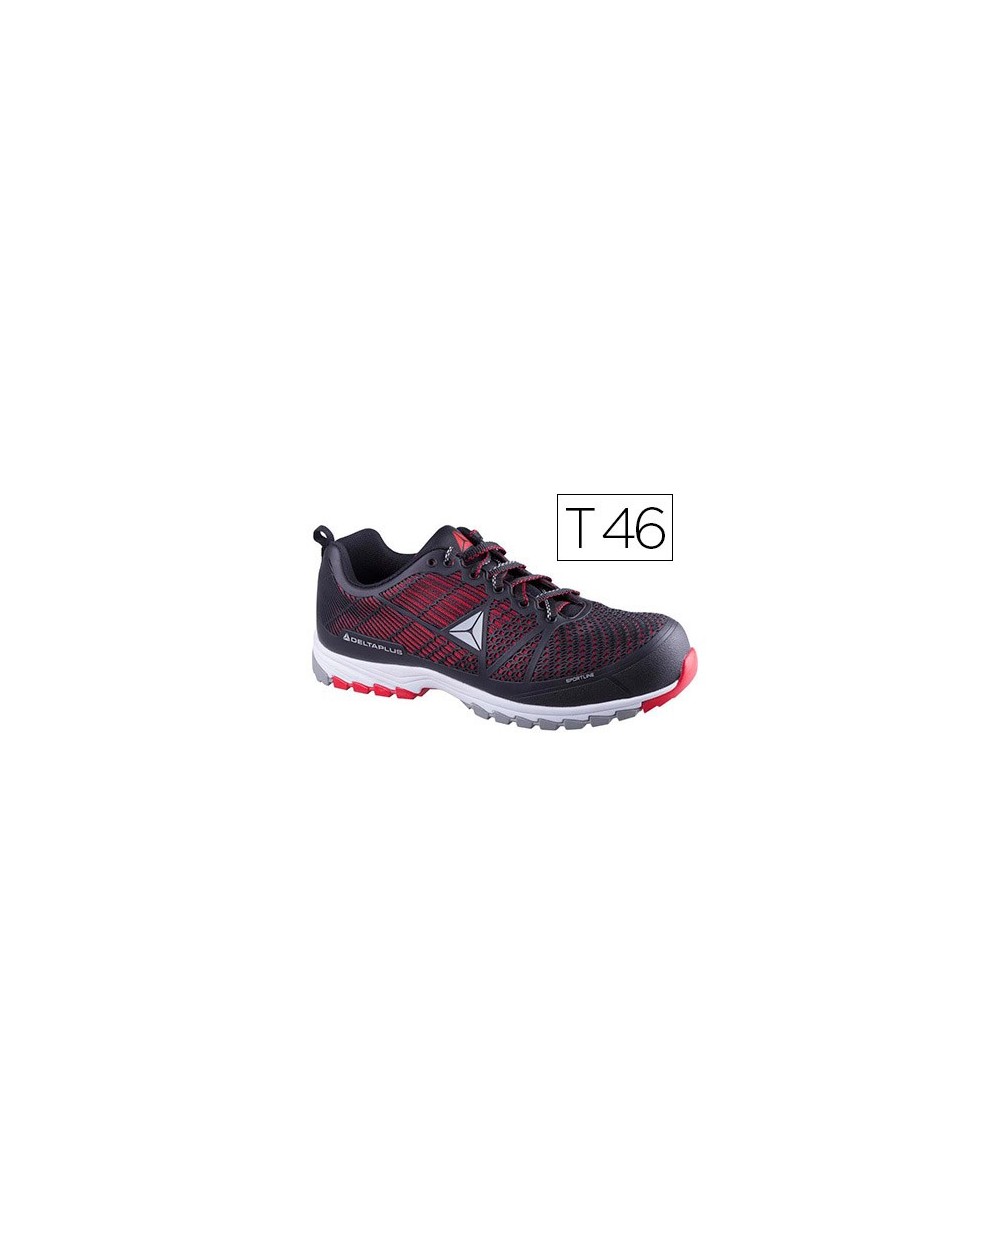 Zapatos de seguridad deltaplus de poliuretano y malla aireada s1p negro y rojo talla 46